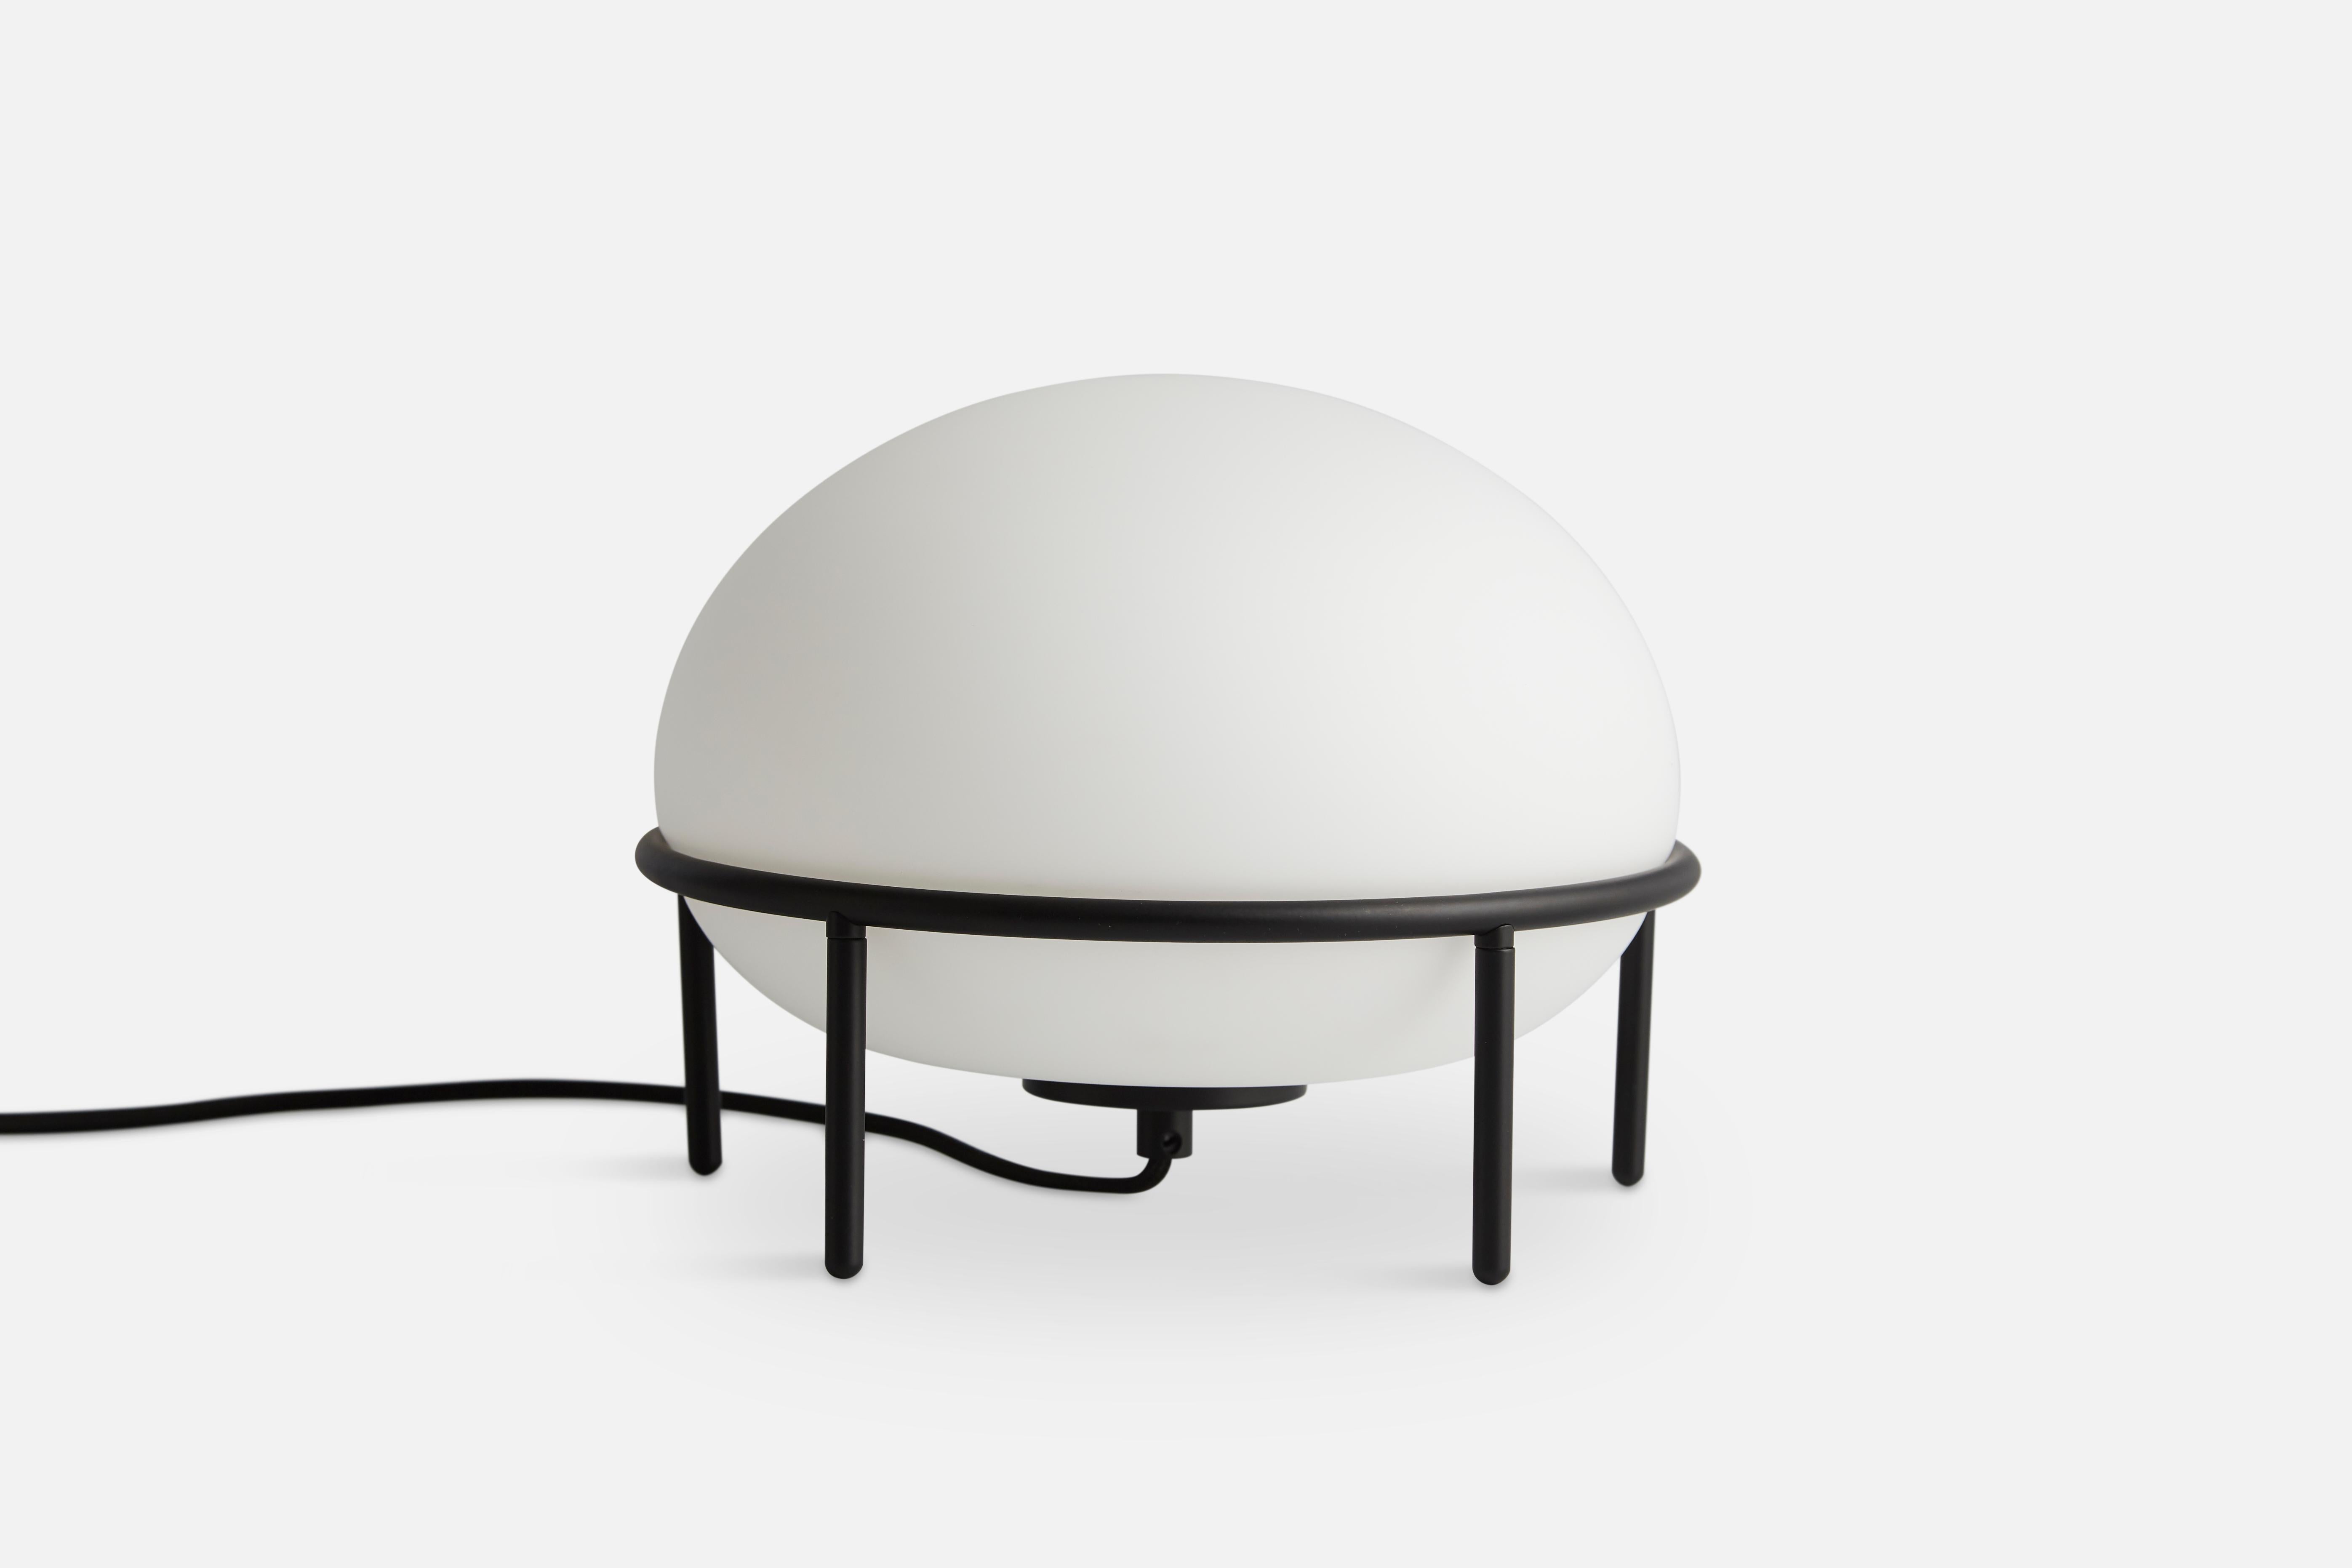 Lampe de table Pump de Kutarq Studio
Matériaux : Métal, verre.
Dimensions : D 24 x H 22 cm

KUTARQ Studio est un studio de design multidisciplinaire basé en Espagne. L'architecte et designer à l'origine du Studio, Jordi López Aguiló, conçoit des